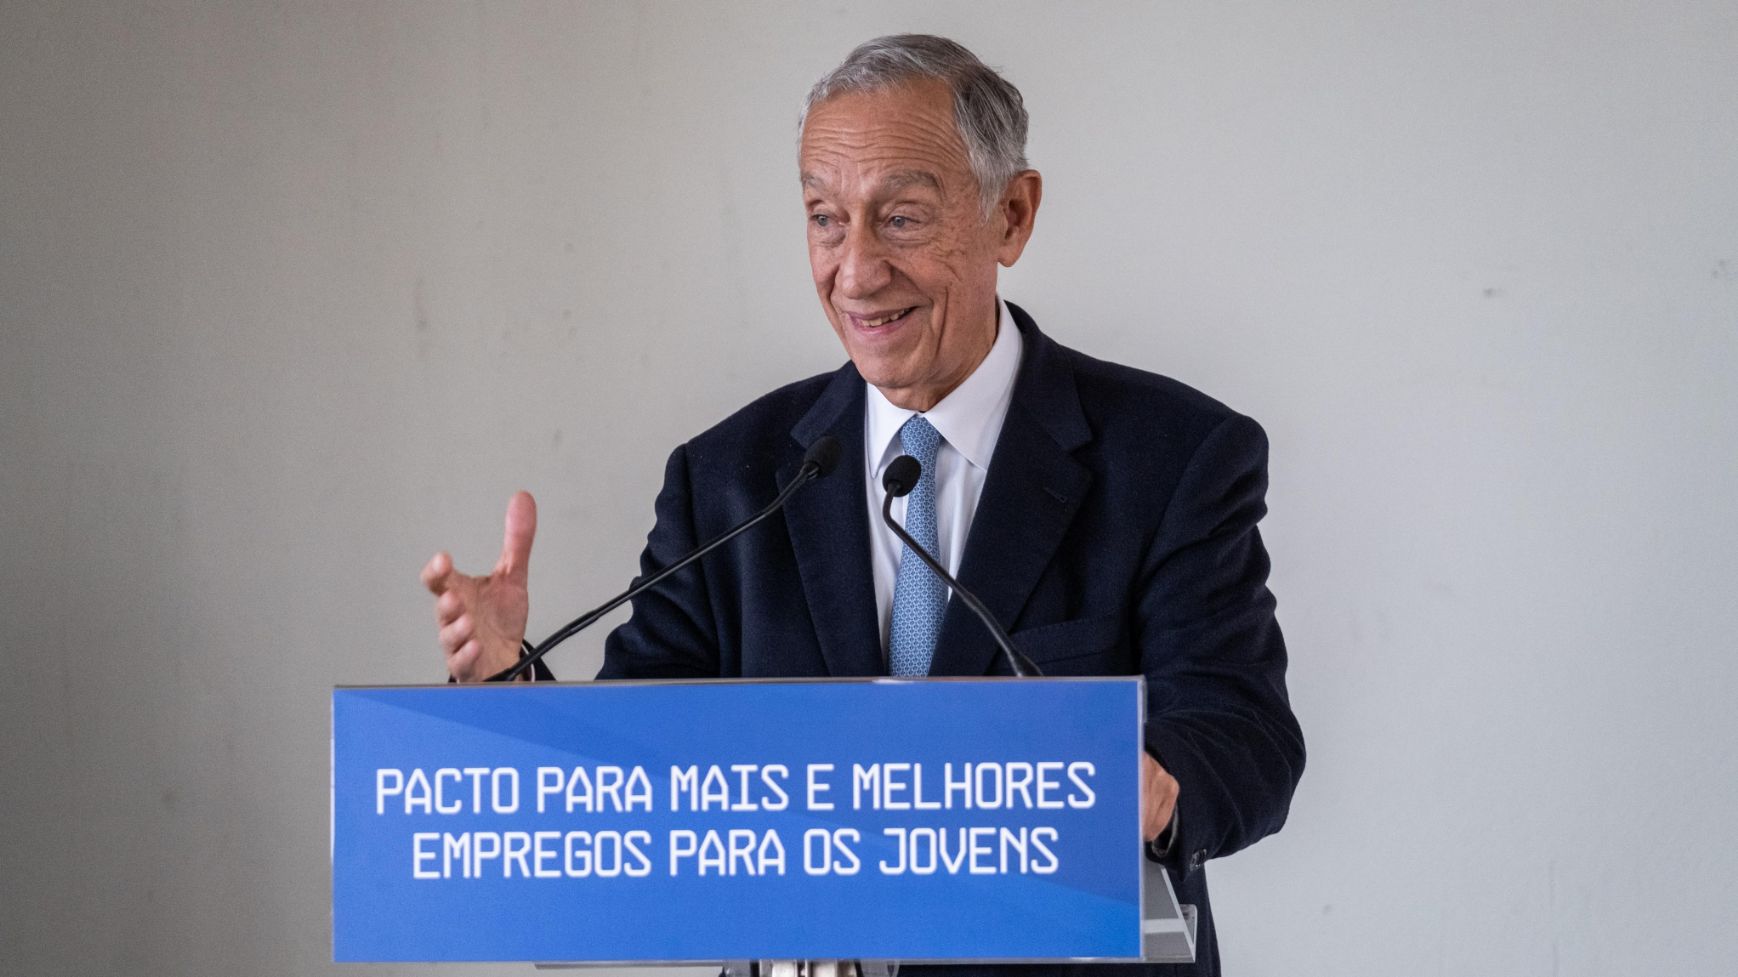 “Pacto Mais e Melhores Empregos para os Jovens” promovido pela Fundação José Neves